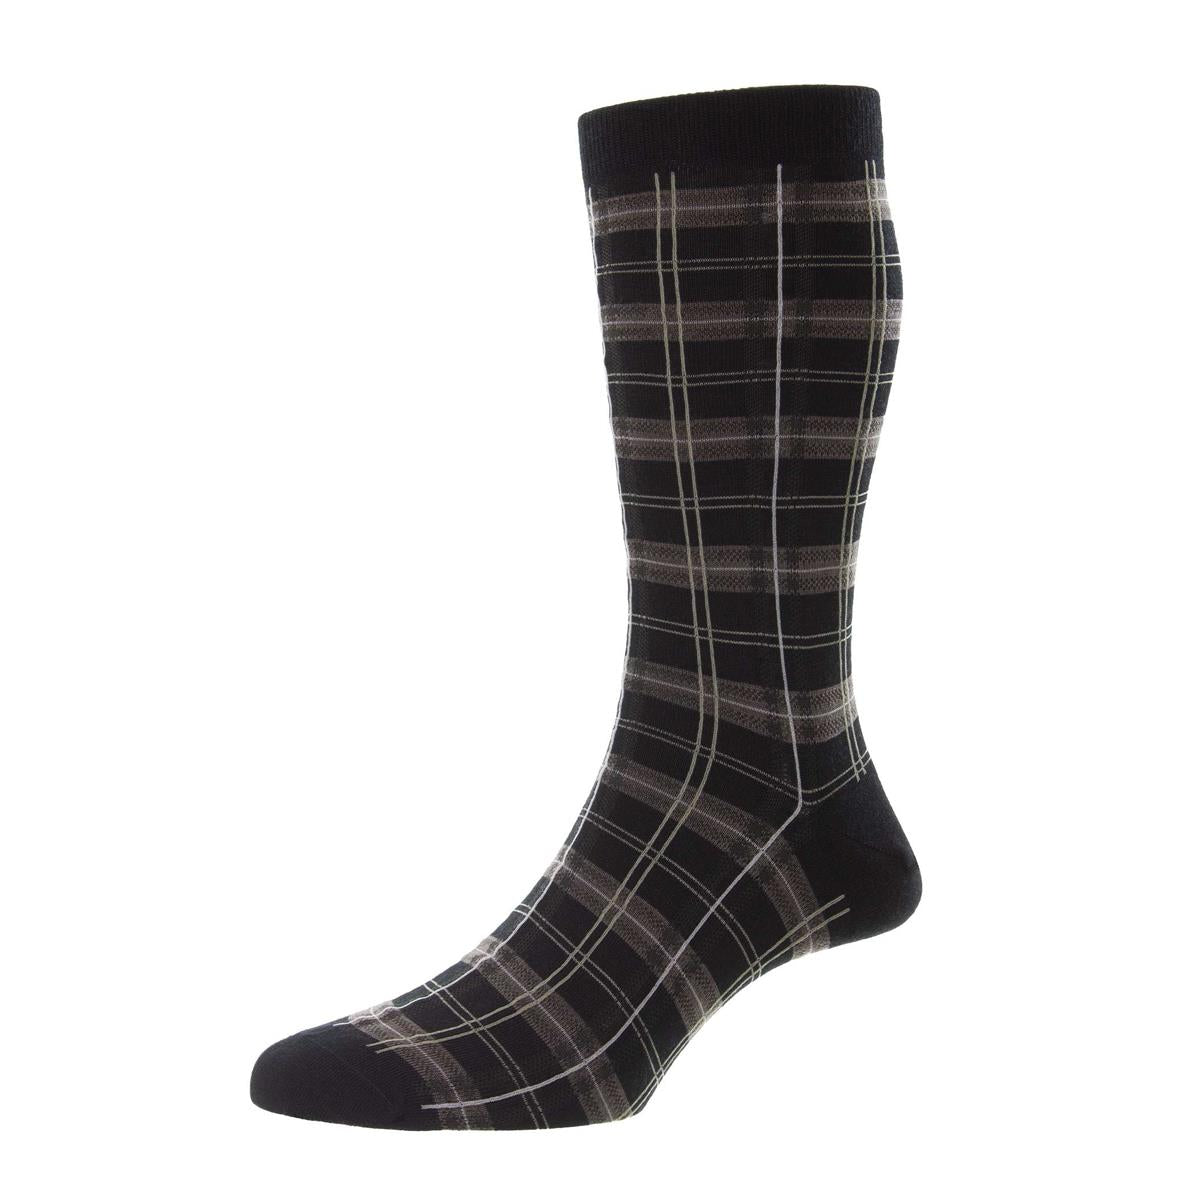 Turnham Merino Wool Socks - Men's - Outlet